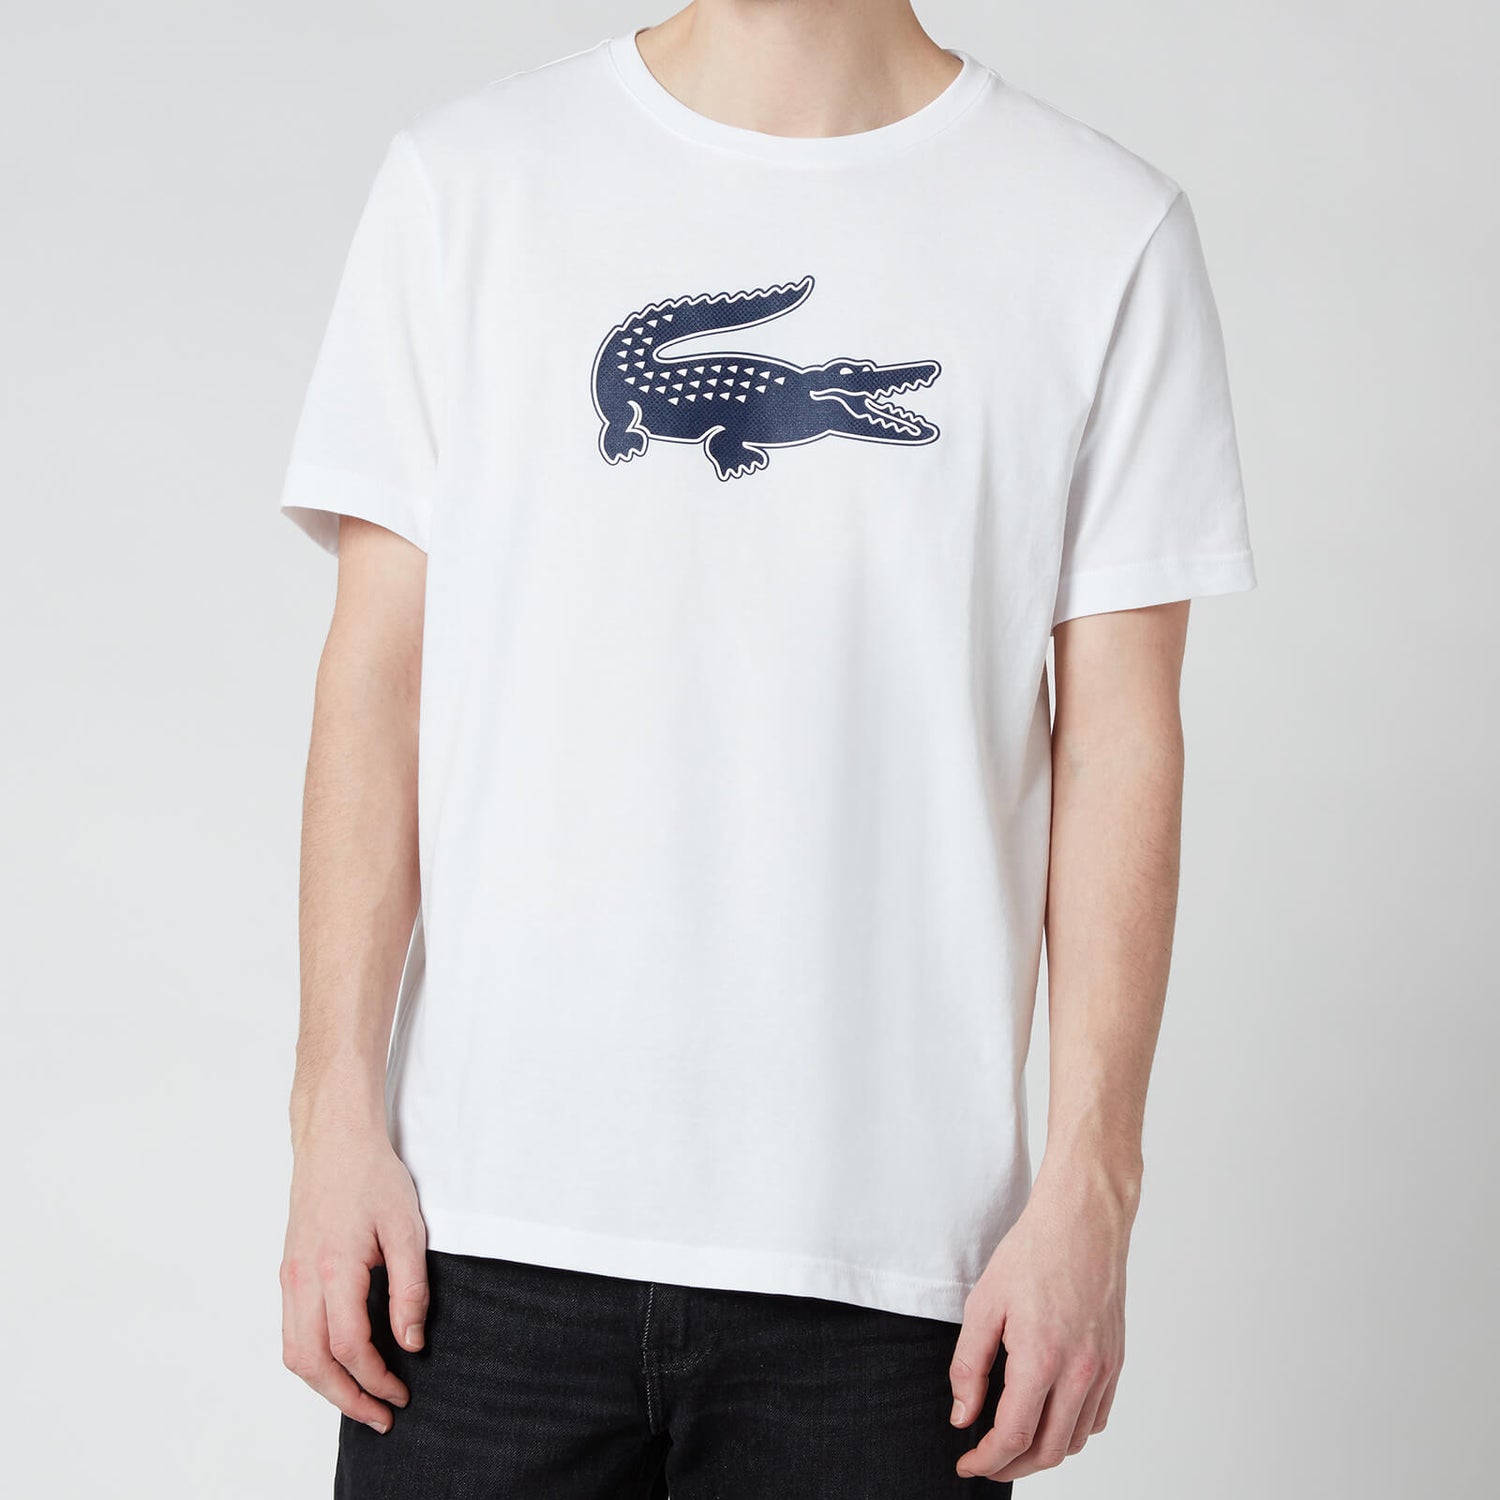 Lacoste Men's Large Crocodile T-Shirt - White/Navy Blue